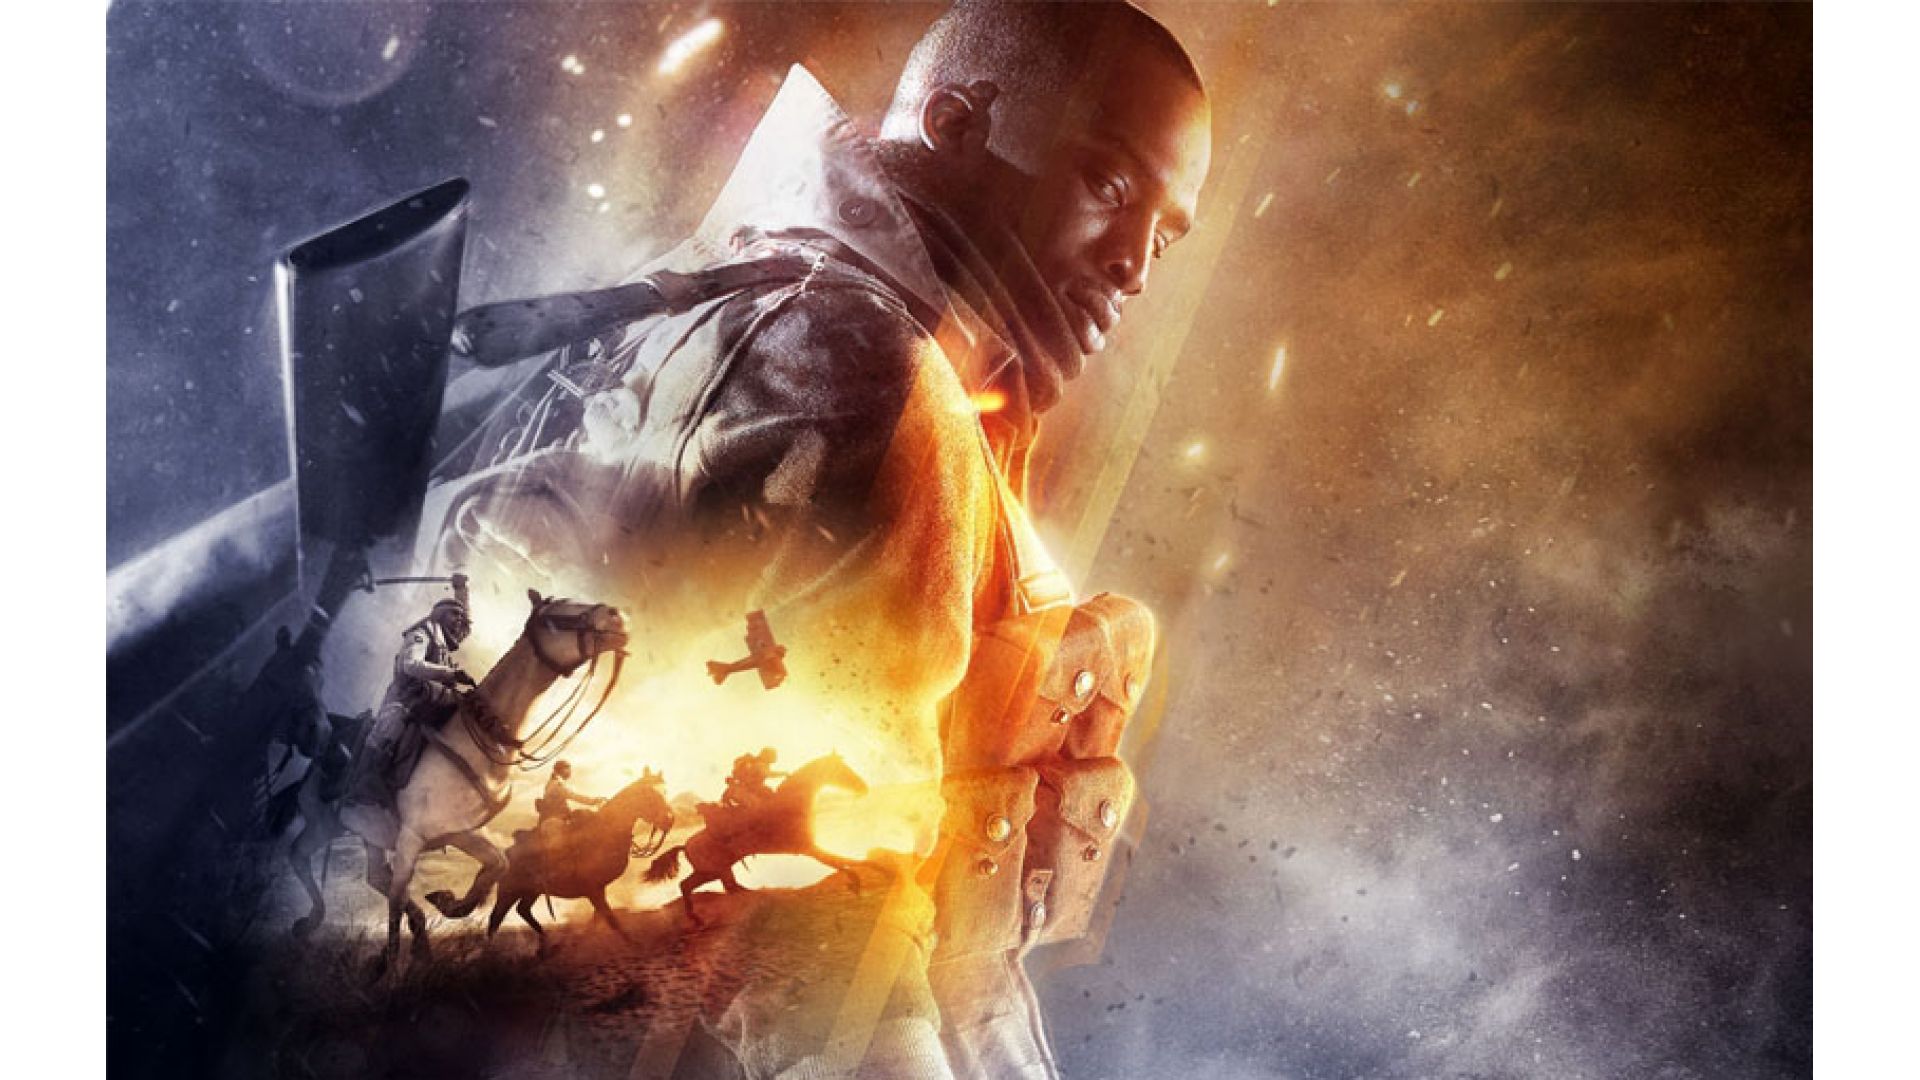 اولین تریلر بخش داستانی بازی Battlefield 1 منتشر شد